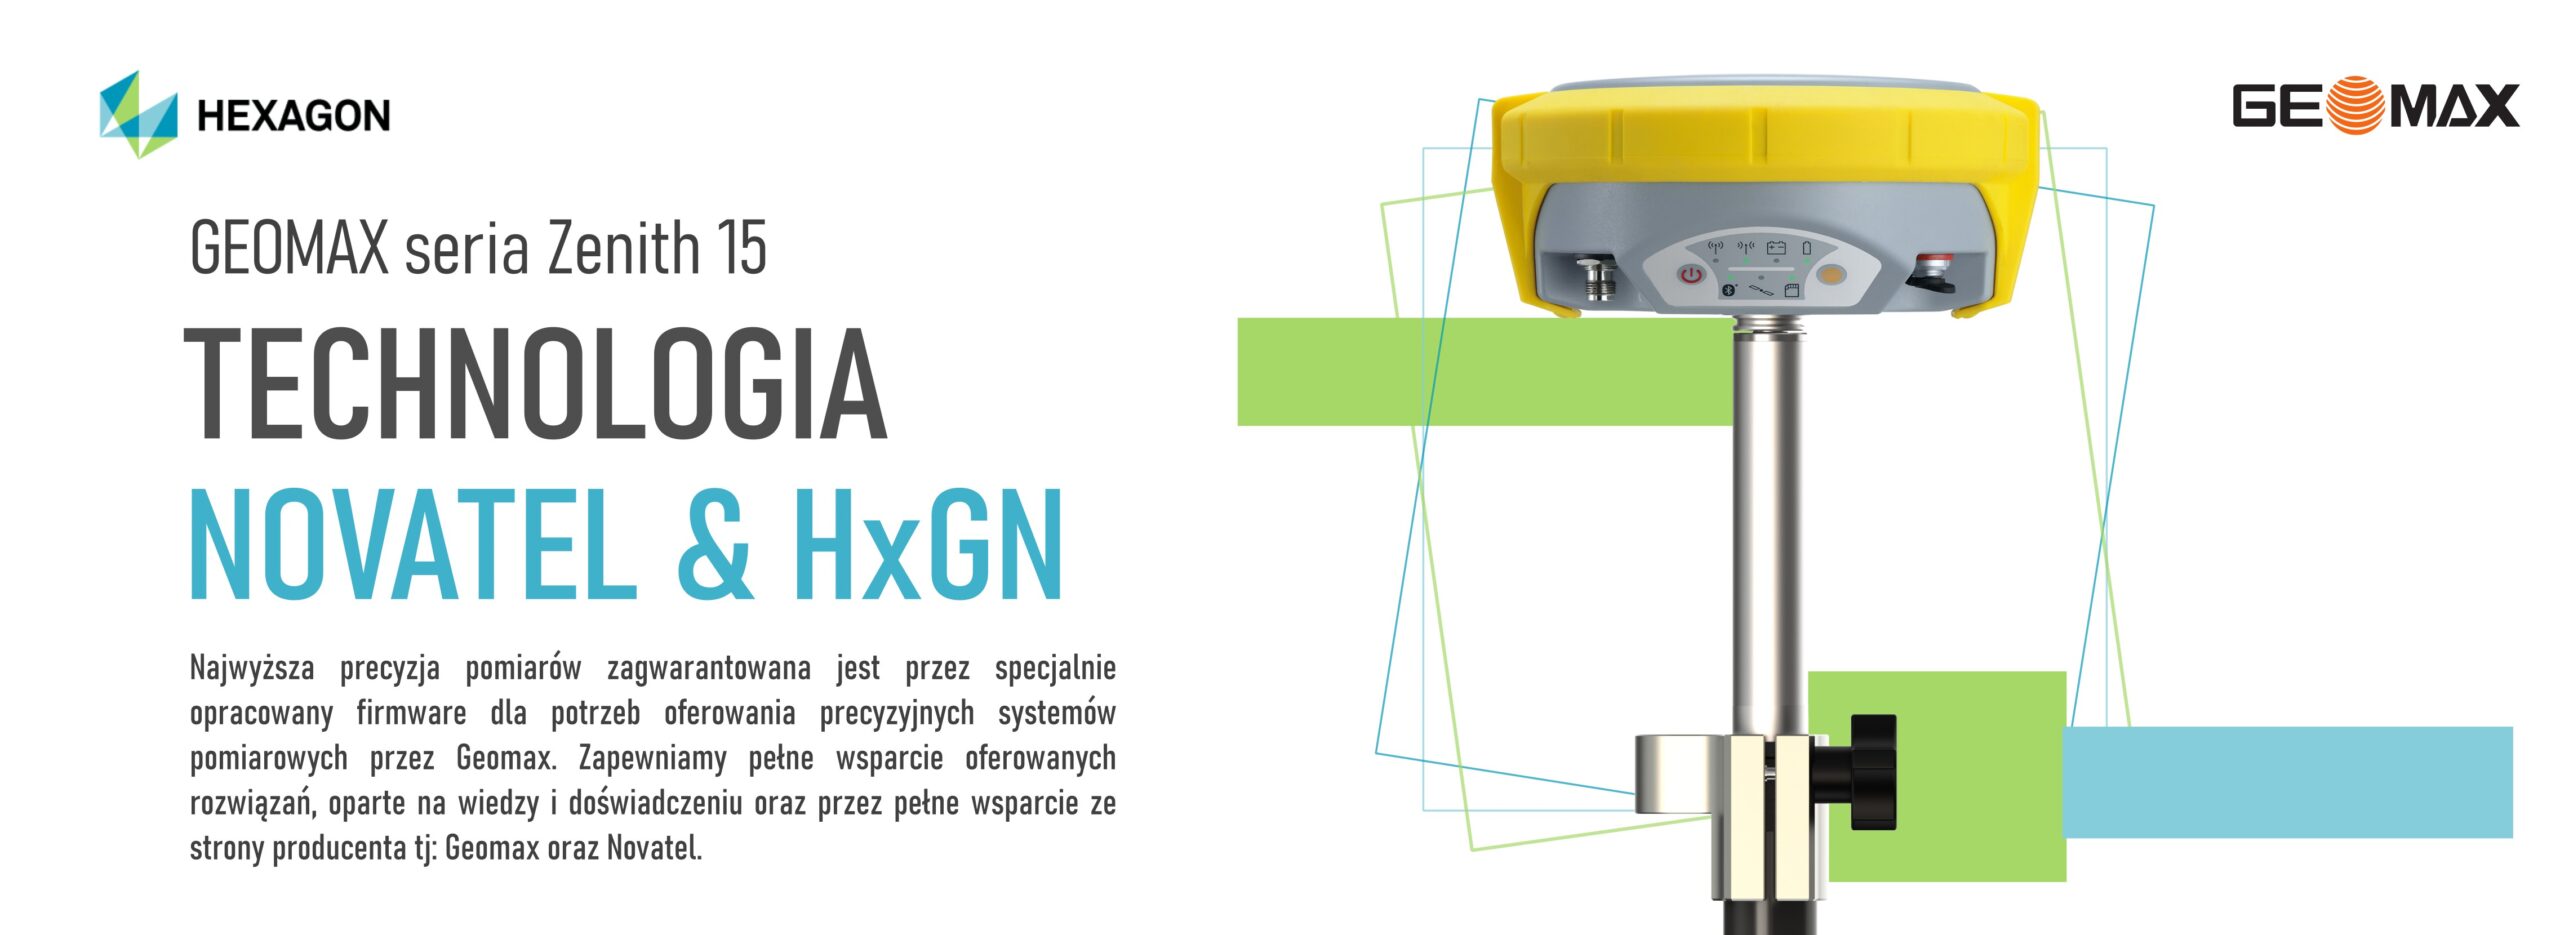 Używane profesjonalne odbiorniki GNSS szwajcarskiej marki Geomax seriaz Zenith 15; Pełna oferta systemów GNSS odbiorniki marki: Geomax; używany zestaw rtk gnss marki Geomax model Zenith 15; w naszej ofercie również inne używane odbiorniki gnss rtk różnych producentów; cena geomax zenith 15; geomax rtk zenith 15; Geomax odbiorniki geodezyjne GNSS RTK RTN; GeoMax Zenith 15 w zestawie z kontrolerem; Geomax odbiorniki geodezyjne do pomiarów RTK; Geoline dystrybutor Geomax seria Zenith 15; cena odbiornik Geomax Zenith; gdzie kupić Geomax Zenith; precyzyjny system GNSS seria Zenith 15 od Geomax; używany odbiornik GNSS RTK marki Geomax; opinie o Geomax Zenith; Odbiornik GPS GEOMAX Zenith 15 z rejestratorem Getac PS336; szwajcarskie odbiorniki GNSS RTK; odbiornik GNSS Leica; używany odbiornik Leica RTK RTN GNSS; używany zestaw geodezyjny odbiornik Leica; komis sprzętu geodezyjnego Leica; używane zestawy do pomiarów RTK; Leica odbiornik GPS z kontrolerem; sprzęt geodezyjny używany; używane zestawy geodezyjne odbiorniki GNSS RTK; kolida; ruide; stonex; chc; hi-target; komis sprzętu geodezyjnego; używany zestaw RTK; chiński odbiornik rtk; tani odbiornik gps rtk; zestaw gps rtk; ranking gps geodezyjnych; zestaw gnss rtk; ruide gps opinie; odbiornik kolida; ruide nova r6; jaki gps dla geodety; profesjonalne rozwiązania pomiarowe zestawy odbiorników gnss rtk; odbiornik gnss rtk south; south galaxy g1; odbiornik rtk south galaxy g6; tani zestaw rtk; zestaw gps rtk cena; po leasingowy sprzęt geodezyjny; chiński gps geodezyjny; zestaw gnss; odbiornik rtk; odbiornik rtk gnss ruide; odbiornik ruide; ruide comet r8i; ruide pulsar; ruide r90i; ruide r6p; ruide pulsar r6p; ruide opinie; odbiornik rtk gnss south; south gps; gps gnss; używany odbiornik gps rtk; Pełna oferta systemów GNSS odbiorniki marki: Geomax; używany zestaw rtk gnss marki Geomax model Zenith 10; w naszej ofercie również inne używane odbiorniki gnss rtk różnych producentów; kolida; ruide; stonex; chc; hi-target; komis sprzętu geodezyjnego; używany zestaw RTK; chiński odbiornik rtk; tani odbiornik gps rtk; zestaw gps rtk; ranking gps geodezyjnych; zestaw gnss rtk; ruide gps opinie; odbiornik kolida; ruide nova r6; jaki gps dla geodety; profesjonalne rozwiązania pomiarowe zestawy odbiorników gnss rtk; odbiornik gnss rtk south; south galaxy g1; odbiornik rtk south galaxy g6; tani zestaw rtk; zestaw gps rtk cena; po leasingowy sprzęt geodezyjny; chiński gps geodezyjny; zestaw gnss; odbiornik rtk; odbiornik rtk gnss ruide; odbiornik ruide; ruide comet r8i; ruide pulsar; ruide r90i; ruide r6p; ruide pulsar r6p; ruide opinie; odbiornik rtk gnss south; south gps; gps gnss; używany odbiornik gps rtk; odbiornik geodezyjny Geomax Zenith 10; Zenith 35 PRO; GPS Zenith; Odbiornik GPS GEOMAX; GeoMax Zenith 20; GeoMax opinie; komis sprzętu geodezyjnego; GeoMax zenith 40; Technologie pomiarowe Geomax GPS geodezyjny; Geomax Szwajcaria; Komis geodezyjny; Geoline Bydgoszcz; Geoline Geomax; sprzęt pomiarowy Geomax; Nowy model odbiornika GPS Zenith35; Geomax GPS Zenith 20; Tachimetr GEOMAX; GeoMax Zoom 70; Tachimetr geoline; GPS GEOMAX cena; Geoline sklep; Tachimetr 3D; Komis geodezyjny odbiornik Geomax GPS GLONASS; GeoExpo store komis geodezyjny; Odbiornik GNSS Zenith 15 firmy GEOMAX; odbiornik geodezyjny IMU South Galaxy G7; odbiornik geodezyjny GPS RTK G7 IMU South; odbiorniki geodezyjne IMU; RTK z IMU; odbiornik GNSS IMU South; Odbiornik geodezyjny RTK z IMU; odbiornik IMU; gps IMU; geodezja IMU; tani odbiornik geodezyjny IMU; chińskie IMU; pomiar z wychyleniem IMU South Galaxy G7; pomiar IMU G7 South RTK GNSS; odbiornik geodezyjny IMU South Galaxy G2; odbiornik geodezyjny GPS RTK G2 IMU South; odbiorniki geodezyjne IMU; RTK z IMU; odbiornik GNSS IMU South; Odbiornik geodezyjny RTK z IMU; odbiornik IMU; gps IMU; geodezja IMU; tani odbiornik geodezyjny IMU; chińskie IMU; pomiar z wychyleniem IMU South Galaxy G2; pomiar IMU G2 South RTK GNSS; geodezyjne odbiorniki GNSS RTK z IMU; IMU RTK RTN; IMU GNSS; IMU odbiornik dla geodezji; cena odbiornik geodezyjny IMU RTK; cena odbiornik RTK z IMU; cena odbiornik gps z IMU RTK; Geomax Zenith 60 precyzyjny odbiornik GNSS RTK wyposażony w sensor IMU; Odbiornik GNSS RTK IMU; Odbiornik geodezyjny RTK GNSS z IMU; Cena odbiornik GNSS RTK z IMU; geodezyjny zestaw pomiarowy gps gnss rtk imu; odbiornik geomax zenith 60 z IMU; odbiornik geodezyjny cena imu; IMU; nowoczesny odbiornik gnss z IMU; geomax odbiornik z wychyleniem; odbiornik gnss rtk z wychyleniem; odbiornik gnss rtk fix imu; odbiornik gnss pomiar z wychyleniem IMU; odbiornik marki Geomax model Zenith 60 IMU; Carlson BRx7 cena; Leica GS18T forum; Sensor IMU; Trimble R12i cena; GPS IMU; Spectra Precision SP60 cena; Kontroler do odbiornika GPS; Geotronics gnss; RUIDE Sirius cena; Art-Geo; SIRIUS E600; ART-GEO Zielona Góra; RUIDE Sirius opinie; SIRIUS E600 opinie; RTK net; Odbiornik GNSS co to jest; GNSS IMU; Carlson BRx7; GPS IMU; Carlson BRx7 cena; Odbiornik GNSS CENA; Kolida; Sensor IMU; NaviGate; Odbiornik geodezyjny GPS GNSS z sensorem IMU; Odbiornik Kolida K5 IMU; Wydajny ergonomiczny odbiornik RTK GNSS z sensorem IMU; Leica GS18; Leica GS18T CENA; Leica GS18T; Leica GS18T forum; GPS Leica CENA; Odbiornik GNSS co to jest; Leica CS20; Odbiornik RTK; Trimble R12i price; Trimble R12i manual; Trimble TSC7 cena; Trimble SPS 882; Trimble R12 opinie; Leica GS18T forum; Trimble R10 cena; Odbiornik GNSS z IMU; Odbiornik geodezyjny RTK RTN GNSS Geomax model Zenith 50, Odbiornik geodezyjny RTK RTN GNSS Geomax model Zenith 35, Odbiornik geodezyjny RTK RTN GNSS Geomax model Zenith 40, Odbiornik geodezyjny RTK RTN GNSS Geomax model Zenith 16, Odbiornik geodezyjny RTK RTN GNSS Geomax model Zenith 25, Odbiornik geodezyjny RTK RTN GNSS Geomax model Zenith 15, Odbiornik geodezyjny RTK RTN GNSS Geomax model Zenith 10, Odbiornik geodezyjny RTK RTN GNSS Geomax model Zenith 20, cena odbiornik geodezyjny Geomax Zenith 50, cena odbiornik geodezyjny Geomax Zenith 35, cena odbiornik geodezyjny Geomax Zenith 40, cena odbiornik geodezyjny Geomax Zenith 16, cena odbiornik geodezyjny Geomax Zenith 15, cena odbiornik geodezyjny Geomax Zenith 25, cena odbiornik geodezyjny Geomax Zenith 10, cena odbiornik geodezyjny Geomax Zenith 20, RTK cena, Zestaw GPS RTK, Sygnał RTK cena, Metodą RTK, Stacja RTK, RTK co to, RTK GPS cena, Stacja RTK cena, RUIDE SIRIUS cena, SIRIUS E600, Art-Geo RUIDE Pulsar R6p cena, RUIDE Sirius opinie, ART-GEO pl, SIRIUS E600 opinie, art-geo opinię, Ranking GPS geodezyjnych, Odbiornik GNSS, Odbiornik GNSS cena; GPS geodezyjny Trimble, Tani odbiornik GPS RTK, Chiński GPS geodezyjny, GPS geodezyjny Topcon, GPS geodezyjny dokładność, Odbiornik GNSS co to jest, Odbiornik GNSS cena, Tani odbiornik GPS RTK, Pomiary GNSS, Leica GS18T cena, art-geo sirius cena, Spectra SP60, Odbiornik GNSS Wikipedia, Geoline, GeoMax Zenith 35 PRO, Geo MAX, Geomax Zenith, Geomax oprogramowanie, GPS GEOMAX cena, GEOkomis, GEOMAX Zenith 20, Geodezja Geomax, Tachimetry Geomax, Teodolity Geomax, Odbiorniki GNSS, Niwelatory laserowe Geomax, Skanery Geomax, Skanery 3D Geomax, Niwelatory optyczne i kodowe Geomax, Lasery rurowe Geomax, Rejestratory Geomax, Używany odbiornik marki Leica model GS08 Plus; Komis sprzętu geodezyjnego-używany odbiornik RTK Leica GS08+ w zestawie z kontrolerm CS10; Używane odbiorniki geodezyjne RTK marki Leica; Używane odbiorniki geodezyjne GPS Leica model GS08+; Leica GPS GS08 Plus; Kontroler polowy Leica CS10; sprzedam odbiornik Leica GS08 Plus; sprzedam zestaw RTK Leica; odbiornik Leica GS08; GPS Leica Viva cena; Gs 07 Leica; Zestaw GPS RTK Leica; Kontroler geodezyjny Leica; Leica GPS używane; Odbiornik GPS Leica; GPS RTK Leica cena; komis sprzętu geodezyjnego Leica; sprzęt pomiarowy Leica; używane kontrolery Leica; odbiornik GPS RTK RTN GNSS Leica cena; cena odbiornik Leica; gdzie kupić odbiornik Leica; seriws odbiorników Leica; serwis Leica Geosystems; używane zestawy geodezyjne odbiorniki Leica; zestaw RTK marki Leica model GS08 oraz GS08+; Leica Viva GNSS; Odbiornik GS08plus; Używany Sprzęt Geodezyjny-odbiornik marki Leica model GS08 z kontrolerem CS10; GNSS Leica Viva GS08 plus z Leica CS10; Leica Viva GS08. Kategoria odbiorniki GPS odbiorniki producent Leica; GPS geodezyjny cena; GPS geodezyjny na telefon; Odbiornik GNSS Zenith60 marki GeoMax, zawiera technologię IMU; Stonex S900T CENA; Stonex Polska; StoneX GAIN Capital; Stonex S900A; Stonex opinie; CZERSKI Trade; Czerski GPS; Stonex GPS; RUIDE RENO1; RUIDE R8i; Leica gs18i; Leica GS07 cena; Leica GS16; GPS geodezyjny Leica; Ranking odbiorników GPS; Trimble R12i forum; Trimble R2 sprzedam; Trimble R12 cena; Trimble R2 cena; Trimble R10 sprzedam; Geomax GPS GNSS odbiornik; Geomax szwajcarskie odbiorniki GNSS RTK RTN; Geodezyjny odbiornik GNSS RTK RTN szwajcarskiej marki Geomax model Zenith 60 IMU Pro Tag; Aktualna cena odbiornik GNSS RTK RTN Geomax model Zenith 60 IMU Pro Tag; geomax zenith 60 IMU; Zenith60 IMU PRO GNSS marki Geomaxgeomax gps Zenith 60 IMU/60 IMUPRO; odbiornik gnss geomax zenith 60 IMU pro; Geoline gps geomax; zestaw gnss geomax model zenith 60 IMU pro tag; Geomax odbiorniki GNSS RTK RTN sprawdź ofertę; Zapraszamy promocja Geomax Zenith 60 IMU PRO TAG; precyzyjny odbiornik RTK GNSS z pomiarem z wychyleniem geomax zenith 60 IMU pro tag; odbiornik RTK z wychyleniem; geomax zenith 60 IMU pro cena; geomax zenith 60 IMU pro opinie; zenith60 IMU pro cena; GEOMAX Zenith 10; GeoMax GNSS; GPS GEOMAX ZENITH 60 IMU PRO - RTN, RTK, STATYKA; odbiornik GNSS marki Leica; Leica GPS GNSS RTK RTN; zestaw gps Leica; zestaw RTK Leica Geosystems; cena odbiornik Leica; cena odbiornik Leica GS18; odbiornik GNSS Leica; Leica GS18T cena; Ranking GPS geodezyjnych; Odbiornik GNSS cena; Leica GS16 cena; Tani odbiornik GPS RTK; Leica GS18T price; GPS geodezyjny cena; GPS Leica cena; Leica GS18 T; Sprzęt geodezyjny - Odbiorniki GPS; Używany odbiornik GPS LEICA GS15 z kontrolerem CS15; Odbiornik GPS + GLONASS marki Leica model GS15; odbiornik Trimble R12; Trimble R12 cena; Trimble R10 Sprzedam; Trimble R12 price; Trimble R12 eBay; Trimble R12 opinie; Trimble R12 IMU; Trimble R10 cena; Trimble Geodezja; trimble r10 sprzedam; ranking gps geodezyjnych; geomax zenith 25 cena; trimble r10 cena; geomax zenith 60 IMU opinie; Odbiornik z wychyleniem model Zenith 60 IMU TAG marki Geomax; Zintegrowany czujnik wychylenia zestaw RTK GNSS; odbiornik ruchomy GNSS RTK; odbiornik GNSS RTL z systemem TILT; Oferta systemów geodezyjnych: odbiornik GNSS RTK marki SOUTH model S82T; Sprawdź aktualne promocja odbiornik gnss rtk SOUTH model S82T; Aktualna cena odbiornik GNSS RTK RTN SOUTH model S82T; Komis sprzętu geodezyjnego oferuje odbiornik gnss rtk marki SOUTH model S82T; odbiornik GNSS Kolida; kolida k5 infinity; kolida s680p cena; kolida h3; pentax g6ti; geopryzmat raport gps; gps kolida k5 infinity; kolida ufo; kolida k58+; używany sprzęt geodezyjny; tani zestaw RTK; tani zestaw GNSS; tani odbiornik RTK; tani zestaw odbiornika GNSS; odbiornik SOUTH S82T; sklep geodezyjny odbiorniki RTK GNSS; chiński gps rtk; tani odbiornik gps rtk; jaki gps dla geodety; ruide gps opinie; zestaw gps rtk; gps ruide; gps w geodezji; gps kolida; odbiornik gnss rtk south galaxy G6 IMU; odbiornik gnss rtk south galaxy g6; odbiornik gnss rtk southg1; odbiornik gnss rtk southg1 plus; odbiornik gnss rtk south s660; odbiornik gnss rtk south s86; odbiornik gnss rtk kolida k5 infinity; odbiornik gnss rtk kolida K9T; odbiornik gnss rtk kolida K1; odbiornik gnss rtk kolida K20; odbiornik gnss rtk kolida K3; odbiornik gnss rtk kolida K5 IMU; odbiornik gnss rtk kolida K5 UFO; odbiornik gnss rtk kolida 680; odbiornik gnss rtk stonex S900; odbiornik gnss rtk stonex S850; odbiornik gnss rtk stonex S700; odbiornik gnss rtk ruide; pulsar; odbiornik gnss rtk ruide nova R6; odbiornik gnss rtk ruidemeteor S680; odbiornik gnss rtk ruide r90i; odbiornik IMU GNSS South G2, odbiornik IMU GNSS RTK IMU G2; odbiornik IMU RTK IMU South G2; South G2 IMU ; odbiornik IMU RTK IMU IMU ; odbiornik IMU geodezyjny IMU South G2; RTK IMU IMU ; GNSS IMU ; odbiornik IMU IMU South G2 RTK; G2 SOUTH IMU gps; gps IMU ; geodezyjny RTK IMU IMU ; South Galaxy G2 IMU RTK; odbiorniki GPS GNSS South; profesjonalny odbiornik IMU geodezyjny G2 SOUTH; odbiornik IMU G2 IMU SOuth w zestawie z kontrolerem; odbiornik IMU RTK IMU IMU South G2 w zestawie z oprogramowaniem; odbiornik IMU geodezyjny IMU South Galaxy G7; odbiornik IMU geodezyjny GPS RTK IMU G7 IMU South; odbiorniki geodezyjne IMU ; RTK IMU z IMU ; odbiornik IMU GNSS IMU South; odbiornik IMU geodezyjny RTK IMU z IMU ; odbiornik IMU IMU ; gps IMU ; geodezja IMU ; tani odbiornik IMU geodezyjny IMU ; chińskie IMU ; pomiar z wychyleniem IMU South Galaxy G7; pomiar IMU G7 South RTK IMU GNSS; odbiornik IMU geodezyjny IMU South Galaxy G2; odbiornik IMU geodezyjny GPS RTK IMU G2 IMU South; odbiorniki geodezyjne IMU ; RTK IMU z IMU ; odbiornik IMU GNSS IMU South; odbiornik IMU geodezyjny RTK IMU z IMU ; odbiornik IMU IMU ; gps IMU ; geodezja IMU ; tani odbiornik IMU geodezyjny IMU ; chińskie IMU ; pomiar z wychyleniem IMU South Galaxy G2; pomiar IMU G2 South RTK IMU GNSS; geodezyjne odbiorniki GNSS RTK IMU z IMU ; IMU RTK IMU RTN; IMU GNSS; IMU odbiornik IMU dla geodezji; cena odbiornik IMU geodezyjny IMU RTK; cena odbiornik IMU RTK IMU z IMU ; cena odbiornik IMU gps z IMU RTK; Geomax Zenith 60 precyzyjny odbiornik IMU GNSS RTK IMU wyposażony w sensor IMU ; odbiornik IMU GNSS RTK IMU IMU ; odbiornik IMU geodezyjny RTK IMU GNSS z IMU ; Cena odbiornik IMU GNSS RTK IMU z IMU ; geodezyjny zestaw pomiarowy gps gnss RTK IMU IMU ; odbiornik IMU geomax zenith 60 z IMU ; odbiornik IMU geodezyjny cena IMU ; IMU ; nowoczesny odbiornik IMU gnss z IMU ; geomax odbiornik IMU z wychyleniem; odbiornik IMU gnss RTK IMU z wychyleniem; odbiornik IMU gnss RTK IMU fix IMU ; odbiornik IMU gnss pomiar z wychyleniem IMU ; odbiornik IMU marki Geomax model Zenith 60 IMU ; Carlson BRx7 cena; Leica GS18T forum; Sensor IMU ; Trimble R12i cena; GPS IMU ; Spectra Precision SP60 cena; Kontroler do odbiornika GPS; Geotronics gnss; RUIDE Sirius cena; Art-Geo; SIRIUS E600; ART-GEO Zielona Góra; RUIDE Sirius opinie; SIRIUS E600 opinie; RTK IMU net; odbiornik IMU GNSS co to jest; GNSS IMU ; Carlson BRx7; GPS IMU ; Carlson BRx7 cena; odbiornik IMU GNSS CENA; Kolida; Sensor IMU ; NaviGate; odbiornik IMU geodezyjny GPS GNSS z sensorem IMU ; odbiornik IMU Kolida K5 IMU ; Wydajny ergonomiczny odbiornik IMU RTK IMU GNSS z sensorem IMU ; Leica GS18; Leica GS18T CENA; Leica GS18T; Leica GS18T forum; GPS Leica CENA; odbiornik IMU GNSS co to jest; Leica CS20; odbiornik IMU RTK; Trimble R12i price; Trimble R12i manual; Trimble TSC7 cena; Trimble SPS 882; Trimble R12 opinie; Leica GS18T forum; Trimble R10 cena; odbiornik IMU GNSS z IMU ; odbiornik IMU geodezyjny RTK IMU RTN GNSS Geomax model Zenith 50, odbiornik IMU geodezyjny RTK IMU RTN GNSS Geomax model Zenith 35, odbiornik IMU geodezyjny RTK IMU RTN GNSS Geomax model Zenith 40, odbiornik IMU geodezyjny RTK IMU RTN GNSS Geomax model Zenith 16, odbiornik IMU geodezyjny RTK IMU RTN GNSS Geomax model Zenith 25, odbiornik IMU geodezyjny RTK IMU RTN GNSS Geomax model Zenith 15, odbiornik IMU geodezyjny RTK IMU RTN GNSS Geomax model Zenith 10, odbiornik IMU geodezyjny RTK IMU RTN GNSS Geomax model Zenith 20, cena odbiornik IMU geodezyjny Geomax Zenith 50, cena odbiornik IMU geodezyjny Geomax Zenith 35, cena odbiornik IMU geodezyjny Geomax Zenith 40, cena odbiornik IMU geodezyjny Geomax Zenith 16, cena odbiornik IMU geodezyjny Geomax Zenith 15, cena odbiornik IMU geodezyjny Geomax Zenith 25, cena odbiornik IMU geodezyjny Geomax Zenith 10, cena odbiornik IMU geodezyjny Geomax Zenith 20, RTK IMU cena, Zestaw GPS RTK, Sygnał RTK IMU cena, Metodą RTK, Stacja RTK, RTK IMU co to, RTK IMU GPS cena, Stacja RTK IMU cena, RUIDE SIRIUS cena, SIRIUS E600, Art-Geo RUIDE Pulsar R6p cena, RUIDE Sirius opinie, ART-GEO pl, SIRIUS E600 opinie, art-geo opinię, Ranking GPS geodezyjnych, odbiornik IMU GNSS, odbiornik IMU GNSS cena; GPS geodezyjny Trimble, Tani odbiornik IMU GPS RTK, Chiński GPS geodezyjny, GPS geodezyjny Topcon, GPS geodezyjny dokładność, odbiornik IMU GNSS co to jest, odbiornik IMU GNSS cena, Tani odbiornik IMU GPS RTK, Pomiary GNSS, Leica GS18T cena, art-geo sirius cena, Spectra SP60, odbiornik IMU GNSS Wikipedia, Geoline, GeoMax Zenith 35 PRO, Geo MAX, Geomax Zenith, Geomax oprogramowanie, GPS GEOMAX cena, GEOkomis, GEOMAX Zenith 20, Geodezja Geomax, Tachimetry Geomax, Teodolity Geomax, Odbiorniki GNSS, Niwelatory laserowe Geomax, Skanery Geomax, Skanery 3D Geomax, Niwelatory optyczne i kodowe Geomax, Lasery rurowe Geomax, Rejestratory Geomax, Używany odbiornik IMU marki Leica model GS08 Plus; Komis sprzętu geodezyjnego-używany odbiornik IMU RTK IMU Leica GS08+ w zestawie z kontrolerm CS10; Używane odbiorniki geodezyjne RTK IMU marki Leica; Używane odbiorniki geodezyjne GPS Leica model GS08+; Leica GPS GS08 Plus; Kontroler polowy Leica CS10; sprzedam odbiornik IMU Leica GS08 Plus; sprzedam zestaw RTK IMU Leica; odbiornik IMU Leica GS08; GPS Leica Viva cena; Gs 07 Leica; Zestaw GPS RTK IMU Leica; Kontroler geodezyjny Leica; Leica GPS używane; odbiornik IMU GPS Leica; GPS RTK IMU Leica cena; komis sprzętu geodezyjnego Leica; sprzęt pomiarowy Leica; używane kontrolery Leica; odbiornik IMU GPS RTK IMU RTN GNSS Leica cena; cena odbiornik IMU Leica; gdzie kupić odbiornik IMU Leica; seriws odbiorników Leica; serwis Leica Geosystems; używane zestawy geodezyjne odbiorniki Leica; zestaw RTK IMU marki Leica model GS08 oraz GS08+; Leica Viva GNSS; odbiornik IMU GS08plus; Używany Sprzęt Geodezyjny-odbiornik IMU marki Leica model GS08 z kontrolerem CS10; GNSS Leica Viva GS08 plus z Leica CS10; Leica Viva GS08. Kategoria odbiorniki GPS odbiorniki producent Leica; GPS geodezyjny cena; GPS geodezyjny na telefon; odbiornik IMU GNSS Zenith60 marki GeoMax, zawiera technologię IMU ; Stonex S900T CENA; Stonex Polska; StoneX GAIN Capital; Stonex S900A; Stonex opinie; CZERSKI Trade; Czerski GPS; Stonex GPS; RUIDE RENO1; RUIDE R8i; Leica gs18i; Leica GS07 cena; Leica GS16; GPS geodezyjny Leica; Ranking odbiorników GPS; Trimble R12i forum; Trimble R2 sprzedam; Trimble R12 cena; Trimble R2 cena; Trimble R10 sprzedam; Używany odbiornik IMU RTK IMU tanio; Używane odbiorniki geodezyje różnych producentów; odbiornik IMU RTK IMU South S82tT używany; Używany odbiornik IMU Kolida K9T; Używany odbiornik IMU Ruide; Używany odbiornik IMU Leica; Używany odbiornik IMU Topcon; Używany odbiornik IMU Trimble; Używany odbiornik IMU Stonex; Używany odbiornik IMU Sirius; Używany odbiornik IMU Satlab; Oferta systemów geodezyjnych: odbiornik IMU GNSS RTK IMU marki SOUTH model S82T; Sprawdź aktualne promocja odbiornik IMU gnss RTK IMU SOUTH model S82T; Aktualna cena odbiornik IMU GNSS RTK IMU RTN SOUTH model S82T; Komis sprzętu geodezyjnego oferuje odbiornik IMU gnss RTK IMU marki SOUTH model S82T; odbiornik IMU GNSS Kolida; kolida k5 infinity; kolida s680p cena; kolida h3; pentax g6ti; geopryzmat raport gps; gps kolida k5 infinity; kolida ufo; kolida k58+; używany sprzęt geodezyjny; tani zestaw RTK; tani zestaw GNSS; tani odbiornik IMU RTK; tani zestaw odbiornika GNSS; odbiornik IMU SOUTH S82T; sklep geodezyjny odbiorniki RTK IMU GNSS; chiński gps rtk; tani odbiornik IMU gps rtk; ranking gps geodezyjnych; jaki gps dla geodety; ruide gps opinie; zestaw gps rtk; gps ruide; gps w geodezji; gps kolida; odbiornik IMU gnss RTK IMU south galaxy G6 IMU ; odbiornik IMU gnss RTK IMU south galaxy g6; odbiornik IMU gnss RTK IMU southg1; odbiornik IMU gnss RTK IMU southg1 plus; odbiornik IMU gnss RTK IMU south s660; odbiornik IMU gnss RTK IMU south s86; odbiornik IMU gnss RTK IMU kolida k5 infinity; odbiornik IMU gnss RTK IMU kolida K9T; odbiornik IMU gnss RTK IMU kolida K1; odbiornik IMU gnss RTK IMU kolida K20; odbiornik IMU gnss RTK IMU kolida K3; odbiornik IMU gnss RTK IMU kolida K5 IMU ; odbiornik IMU gnss RTK IMU kolida K5 UFO; odbiornik IMU gnss RTK IMU kolida 680; odbiornik IMU gnss RTK IMU stonex S900; odbiornik IMU gnss RTK IMU stonex S850; odbiornik IMU gnss RTK IMU stonex S700; odbiornik IMU gnss RTK IMU stonex S900; odbiornik IMU gnss RTK IMU ruide; pulsar; odbiornik IMU gnss RTK IMU ruide nova R6; odbiornik IMU gnss RTK IMU ruidemeteor S680; odbiornik IMU gnss RTK IMU ruide r90i; odbiornik IMU geodezyjny RTK IMU sirius; tani zestaw RTK IMU rtn; cena odbiornik IMU RTK IMU sirius; pełny zestaw geodezyjny rtk; cena rtk; cena rtn; cena gps geodezyjny; odbiornik IMU geodezyjny z kontrolerem polowym; RTK IMU GPS; Odbiorniki GPS geodezja; GPS geodezyjny Wypożyczalnia; Zestaw GPS geodezja; GPS geodezyjny dokładność; odbiornik IMU RTK IMU zestawienie; odbiornik IMU RTK IMU jaki wybrać; odbiornik IMU RTK IMU opinie; odbiornik IMU GPS RTK IMU GNSS Allegro; odbiornik IMU GPS RTK IMU GNSS olx; art-geo sirius cena; RUIDE Sirius cena; art-geo sirius opinie; RUIDE Sirius opinie; RUIDE CENA; Carlson BRx7; Art-Geo opinie; RUIDE METEOR; odbiornik IMU geodezyjny IMU South Galaxy G7; odbiornik IMU geodezyjny GPS RTK IMU G7 IMU South; odbiorniki geodezyjne IMU ; RTK IMU z IMU ; odbiornik IMU GNSS IMU South; odbiornik IMU geodezyjny RTK IMU z IMU ; odbiornik IMU IMU ; gps IMU ; geodezja IMU ; tani odbiornik IMU geodezyjny IMU ; chińskie IMU ; pomiar z wychyleniem IMU South Galaxy G7; pomiar IMU G7 South RTK IMU GNSS; odbiornik IMU geodezyjny IMU South Galaxy G2; odbiornik IMU geodezyjny GPS RTK IMU G2 IMU South; odbiorniki geodezyjne IMU ; RTK IMU z IMU ; odbiornik IMU GNSS IMU South; odbiornik IMU geodezyjny RTK IMU z IMU ; odbiornik IMU IMU ; gps IMU ; geodezja IMU ; tani odbiornik IMU geodezyjny IMU ; chińskie IMU ; pomiar z wychyleniem IMU South Galaxy G2; pomiar IMU G2 South RTK IMU GNSS; geodezyjne odbiorniki GNSS RTK IMU z IMU ; IMU RTK IMU RTN; IMU GNSS; IMU odbiornik IMU dla geodezji; cena odbiornik IMU geodezyjny IMU RTK; cena odbiornik IMU RTK IMU z IMU ; cena odbiornik IMU gps z IMU RTK; Geomax Zenith 60 precyzyjny odbiornik IMU GNSS RTK IMU wyposażony w sensor IMU ; odbiornik IMU GNSS RTK IMU IMU ; odbiornik IMU geodezyjny RTK IMU GNSS z IMU ; Cena odbiornik IMU GNSS RTK IMU z IMU ; geodezyjny zestaw pomiarowy gps gnss RTK IMU IMU ; odbiornik IMU geomax zenith 60 z IMU ; odbiornik IMU geodezyjny cena IMU ; IMU ; nowoczesny odbiornik IMU gnss z IMU ; geomax odbiornik IMU z wychyleniem; odbiornik IMU gnss RTK IMU z wychyleniem; odbiornik IMU gnss RTK IMU fix IMU ; odbiornik IMU gnss pomiar z wychyleniem IMU ; odbiornik IMU marki Geomax model Zenith 60 IMU ; Carlson BRx7 cena; Leica GS18T forum; Sensor IMU ; Trimble R12i cena; GPS IMU ; Spectra Precision SP60 cena; Kontroler do odbiornika GPS; Geotronics gnss; RUIDE Sirius cena; Art-Geo; SIRIUS E600; ART-GEO Zielona Góra; RUIDE Sirius opinie; SIRIUS E600 opinie; RTK IMU net; odbiornik IMU GNSS co to jest; GNSS IMU ; Carlson BRx7; GPS IMU ; Carlson BRx7 cena; odbiornik IMU GNSS CENA; Kolida; Sensor IMU ; NaviGate; odbiornik IMU geodezyjny GPS GNSS z sensorem IMU ; odbiornik IMU Kolida K5 IMU ; Wydajny ergonomiczny odbiornik IMU RTK IMU GNSS z sensorem IMU ; Leica GS18; Leica GS18T CENA; Leica GS18T; Leica GS18T forum; GPS Leica CENA; odbiornik IMU GNSS co to jest; Leica CS20; odbiornik IMU RTK; Trimble R12i price; Trimble R12i manual; Trimble TSC7 cena; Trimble SPS 882; Trimble R12 opinie; Leica GS18T forum; Trimble R10 cena; odbiornik IMU GNSS z IMU ; odbiornik IMU geodezyjny RTK IMU RTN GNSS Geomax model Zenith 50, odbiornik IMU geodezyjny RTK IMU RTN GNSS Geomax model Zenith 35, odbiornik IMU geodezyjny RTK IMU RTN GNSS Geomax model Zenith 40, odbiornik IMU geodezyjny RTK IMU RTN GNSS Geomax model Zenith 16, odbiornik IMU geodezyjny RTK IMU RTN GNSS Geomax model Zenith 25, odbiornik IMU geodezyjny RTK IMU RTN GNSS Geomax model Zenith 15, odbiornik IMU geodezyjny RTK IMU RTN GNSS Geomax model Zenith 10, odbiornik IMU geodezyjny RTK IMU RTN GNSS Geomax model Zenith 20, cena odbiornik IMU geodezyjny Geomax Zenith 50, cena odbiornik IMU geodezyjny Geomax Zenith 35, cena odbiornik IMU geodezyjny Geomax Zenith 40, cena odbiornik IMU geodezyjny Geomax Zenith 16, cena odbiornik IMU geodezyjny Geomax Zenith 15, cena odbiornik IMU geodezyjny Geomax Zenith 25, cena odbiornik IMU geodezyjny Geomax Zenith 10, cena odbiornik IMU geodezyjny Geomax Zenith 20, RTK IMU cena, Zestaw GPS RTK, Sygnał RTK IMU cena, Metodą RTK, Stacja RTK, RTK IMU co to, RTK IMU GPS cena, Stacja RTK IMU cena, RUIDE SIRIUS cena, SIRIUS E600, Art-Geo RUIDE Pulsar R6p cena, RUIDE Sirius opinie, ART-GEO pl, SIRIUS E600 opinie, art-geo opinię, Ranking GPS geodezyjnych, odbiornik IMU GNSS, odbiornik IMU GNSS cena; GPS geodezyjny Trimble, Tani odbiornik IMU GPS RTK, Chiński GPS geodezyjny, GPS geodezyjny Topcon, GPS geodezyjny dokładność, odbiornik IMU GNSS co to jest, odbiornik IMU GNSS cena, Tani odbiornik IMU GPS RTK, Pomiary GNSS, Leica GS18T cena, art-geo sirius cena, Spectra SP60, odbiornik IMU GNSS Wikipedia, Geoline, GeoMax Zenith 35 PRO, Geo MAX, Geomax Zenith, Geomax oprogramowanie, GPS GEOMAX cena, GEOkomis, GEOMAX Zenith 20, Geodezja Geomax, Tachimetry Geomax, Teodolity Geomax, Odbiorniki GNSS, Niwelatory laserowe Geomax, Skanery Geomax, Skanery 3D Geomax, Niwelatory optyczne i kodowe Geomax, Lasery rurowe Geomax, Rejestratory Geomax, Używany odbiornik IMU marki Leica model GS08 Plus; Komis sprzętu geodezyjnego-używany odbiornik IMU RTK IMU Leica GS08+ w zestawie z kontrolerm CS10; Używane odbiorniki geodezyjne RTK IMU marki Leica; Używane odbiorniki geodezyjne GPS Leica model GS08+; Leica GPS GS08 Plus; Kontroler polowy Leica CS10; sprzedam odbiornik IMU Leica GS08 Plus; sprzedam zestaw RTK IMU Leica; odbiornik IMU Leica GS08; GPS Leica Viva cena; Gs 07 Leica; Zestaw GPS RTK IMU Leica; Kontroler geodezyjny Leica; Leica GPS używane; odbiornik IMU GPS Leica; GPS RTK IMU Leica cena; komis sprzętu geodezyjnego Leica; sprzęt pomiarowy Leica; używane kontrolery Leica; odbiornik IMU GPS RTK IMU RTN GNSS Leica cena; cena odbiornik IMU Leica; gdzie kupić odbiornik IMU Leica; seriws odbiorników Leica; serwis Leica Geosystems; używane zestawy geodezyjne odbiorniki Leica; zestaw RTK IMU marki Leica model GS08 oraz GS08+; Leica Viva GNSS; odbiornik IMU GS08plus; Używany Sprzęt Geodezyjny-odbiornik IMU marki Leica model GS08 z kontrolerem CS10; GNSS Leica Viva GS08 plus z Leica CS10; Leica Viva GS08. Kategoria odbiorniki GPS odbiorniki producent Leica; GPS geodezyjny cena; GPS geodezyjny na telefon; odbiornik IMU GNSS Zenith60 marki GeoMax, zawiera technologię IMU ; Stonex S900T CENA; Stonex Polska; StoneX GAIN Capital; Stonex S900A; Stonex opinie; CZERSKI Trade; Czerski GPS; Stonex GPS; RUIDE RENO1; RUIDE R8i; Leica gs18i; Leica GS07 cena; Leica GS16; GPS geodezyjny Leica; Ranking odbiorników GPS; Trimble R12i forum; Trimble R2 sprzedam; Trimble R12 cena; Trimble R2 cena; Trimble R10 sprzedam; AlphaGeo L2 - Odbiornik Alpha Geo L2; Alpha Geo L2 - najmniejszy odbiornik GNSS z IMU od Cubic Orb; Miniodbiornik GNSS RTK Alpha GEO L2 z SurPRO; Zestaw GPS Alfa2 z pochyłomierzem; L2 marki AlphaGeo; Alfa-geo NetBOX1 sieciowy odbiornik RTK GNSS; AlphaGeo - Cubic Orb Polska; Test ALPHAGEO L2 IMU; GeoMeter GNSS/RTK; AlphaGEO + QuickGNSS; Odbiornik GNSS Art-Geo SONIC; L2 IMU – najmniejszy i najlżejszy geodezyjny odbiornik z IMU; nowoczesny odbiornik GNSS RTK z IMU nowej generacji; Odbiorniki GPS GIS;